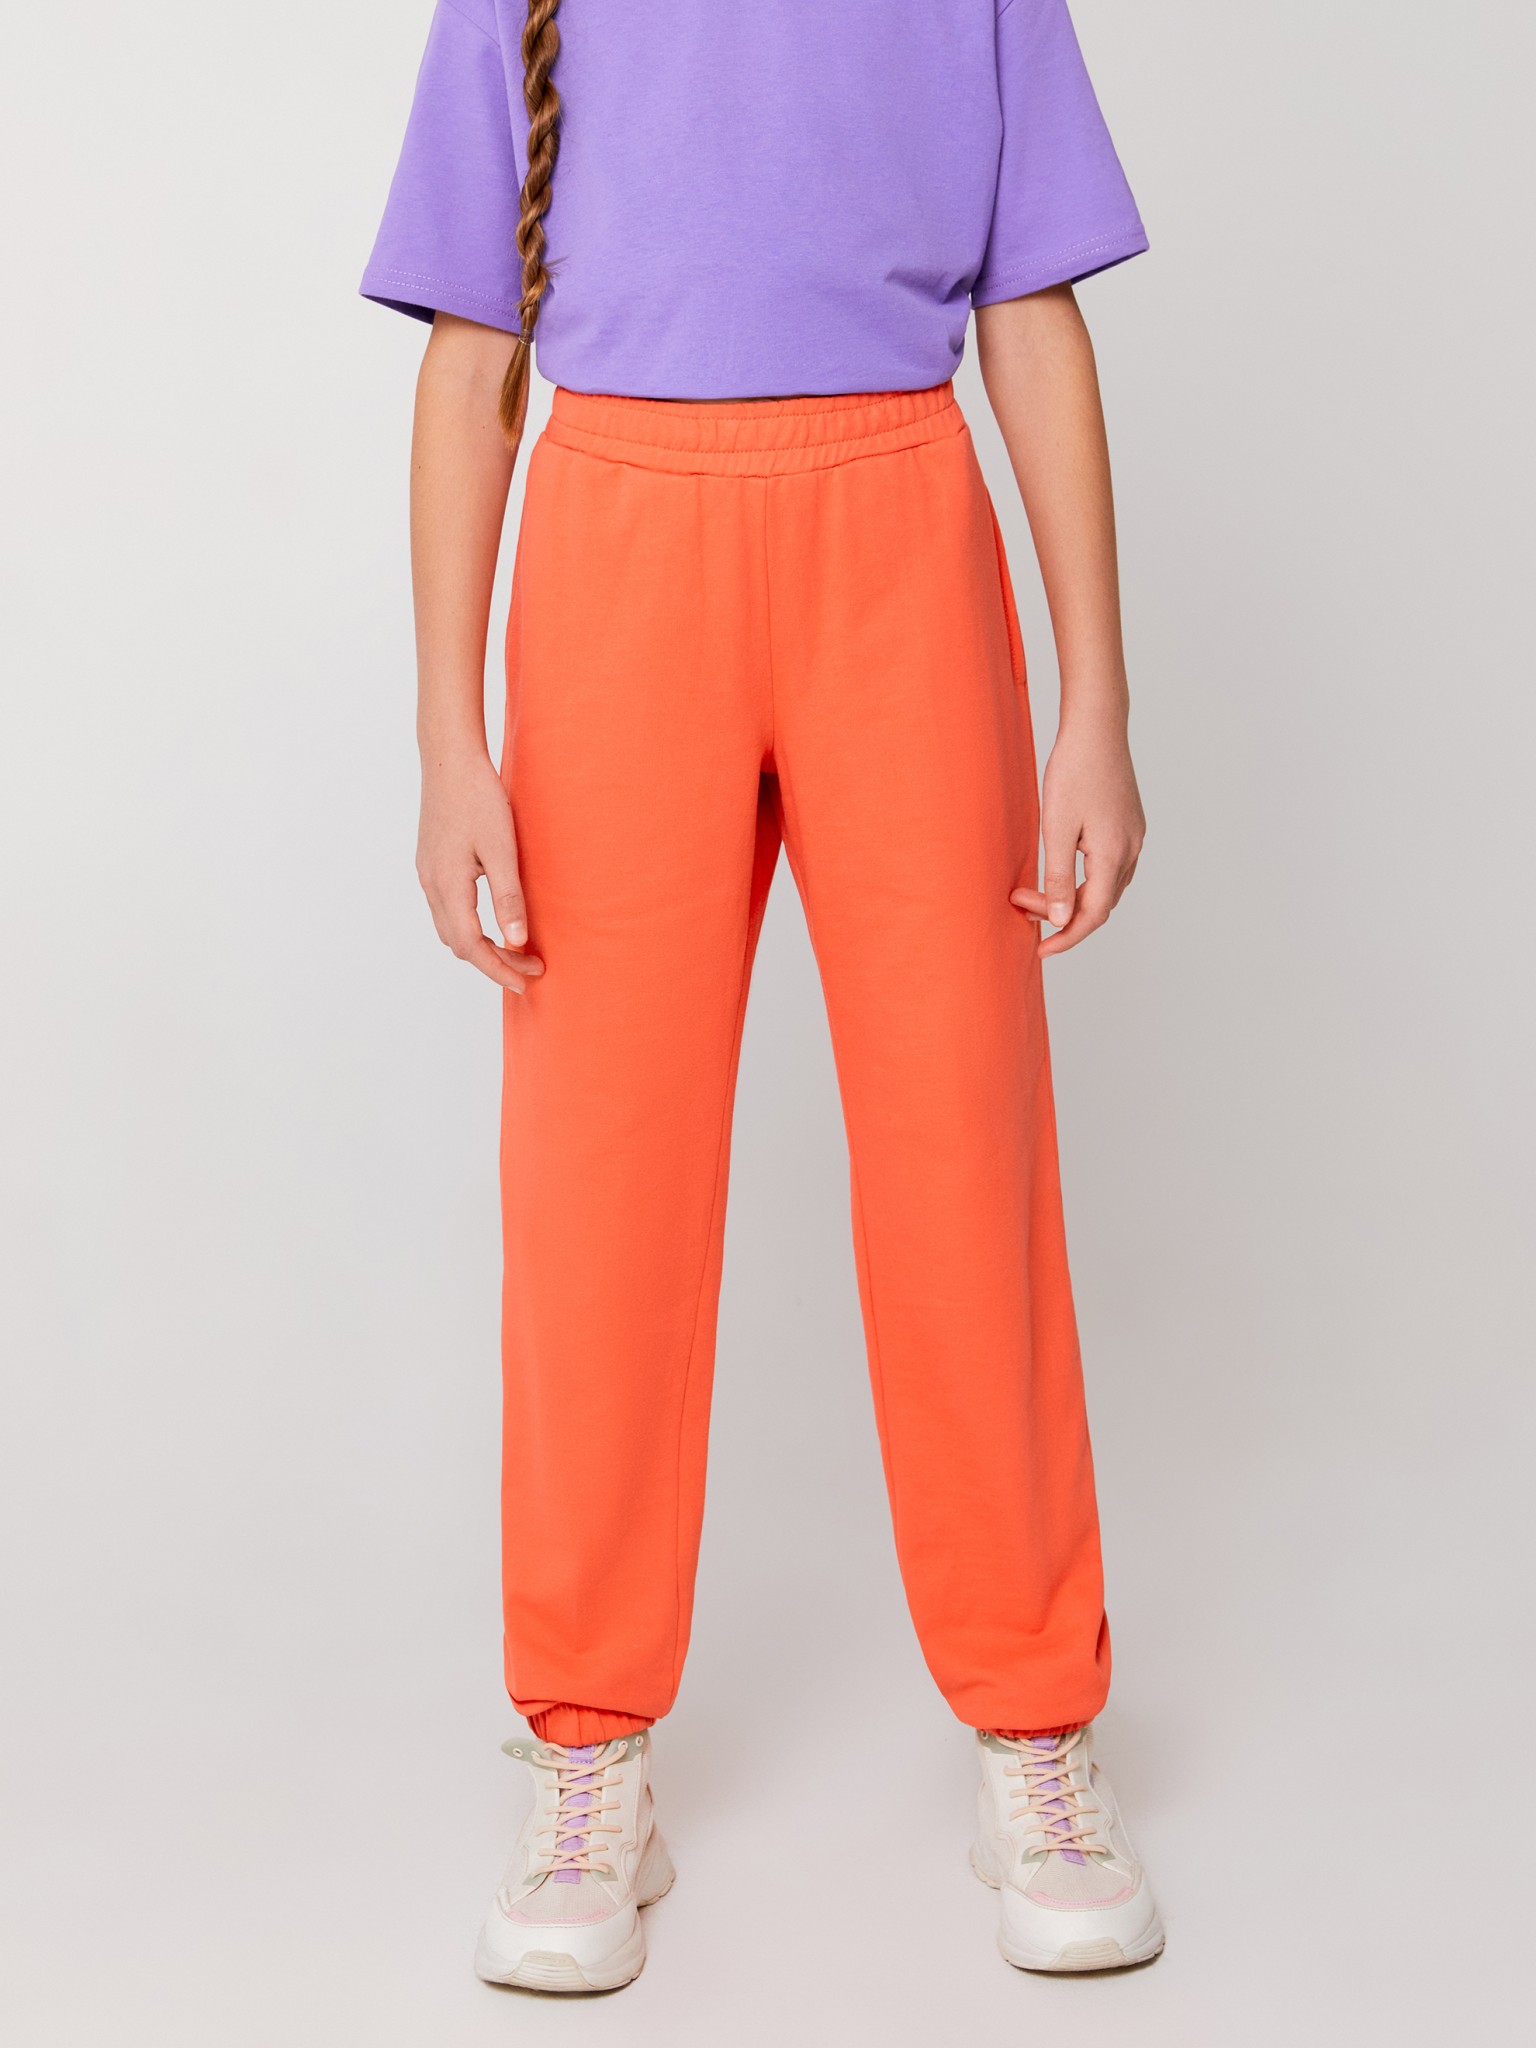 Брюки спортивные ACOOLA 20200460001, оранжевый, 110 брюки утепленные мужские protest оранжевый